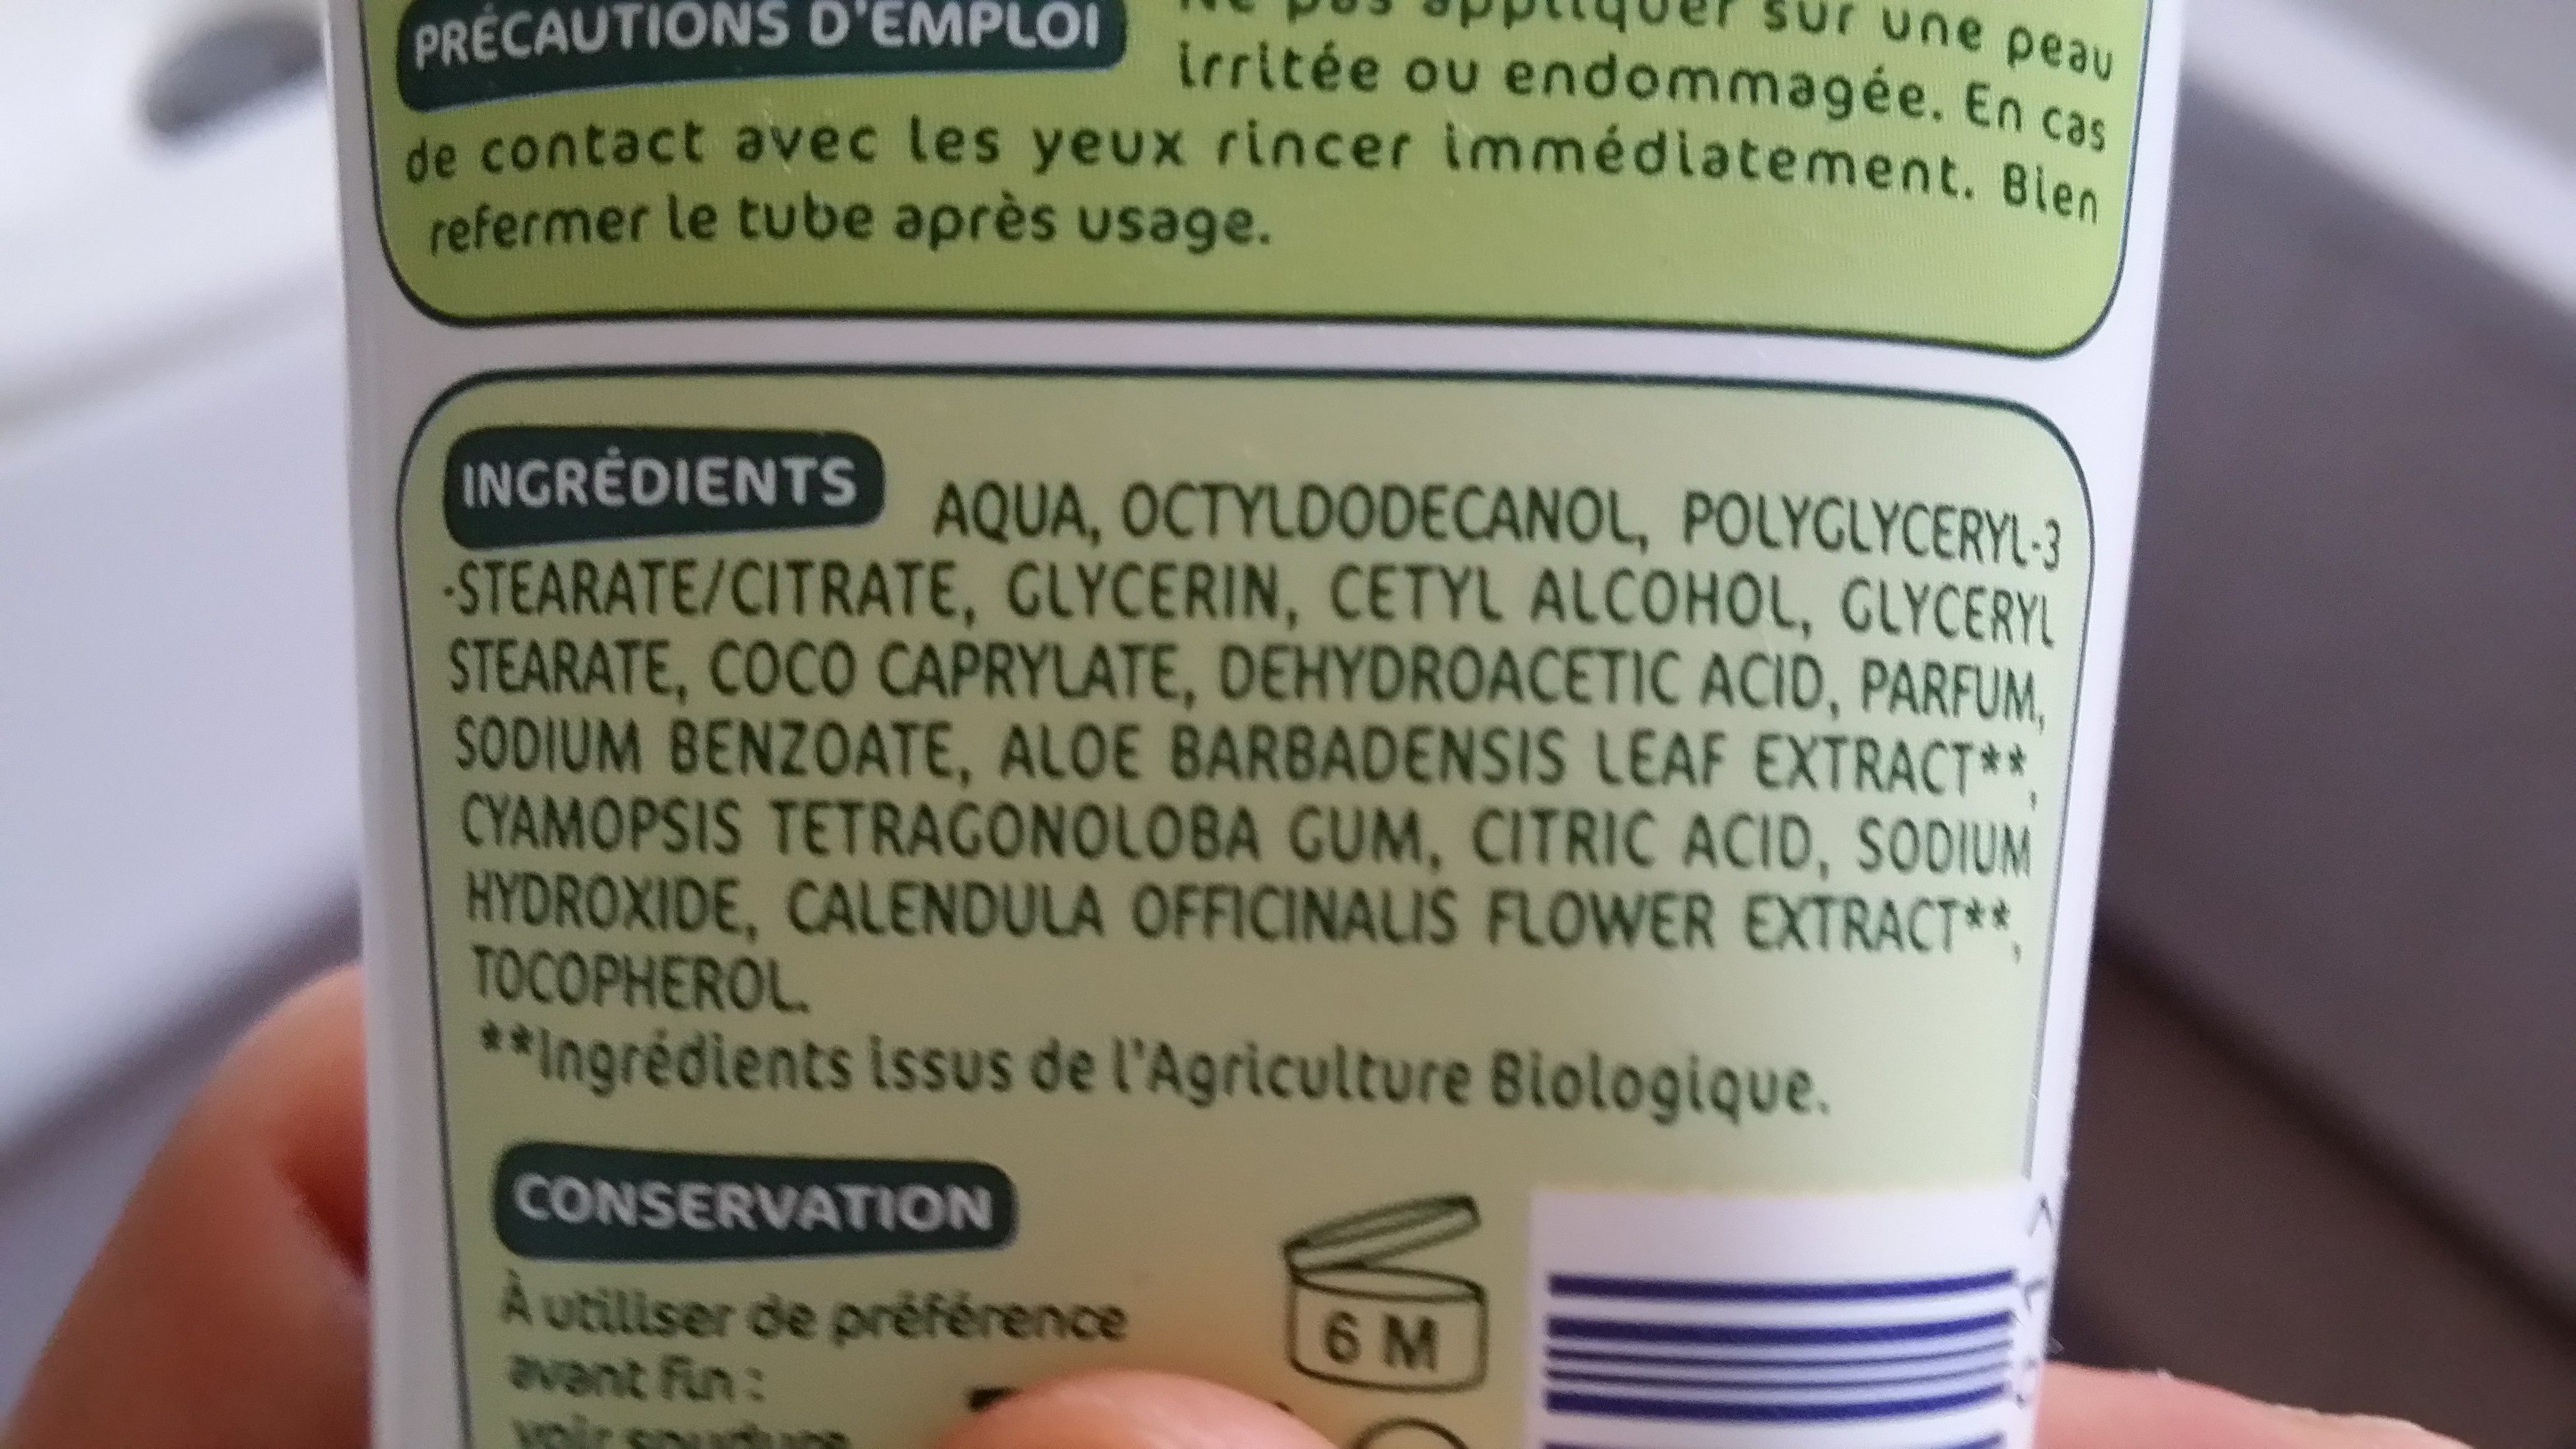 Crème hydratante visage et corps - Ingredients - fr